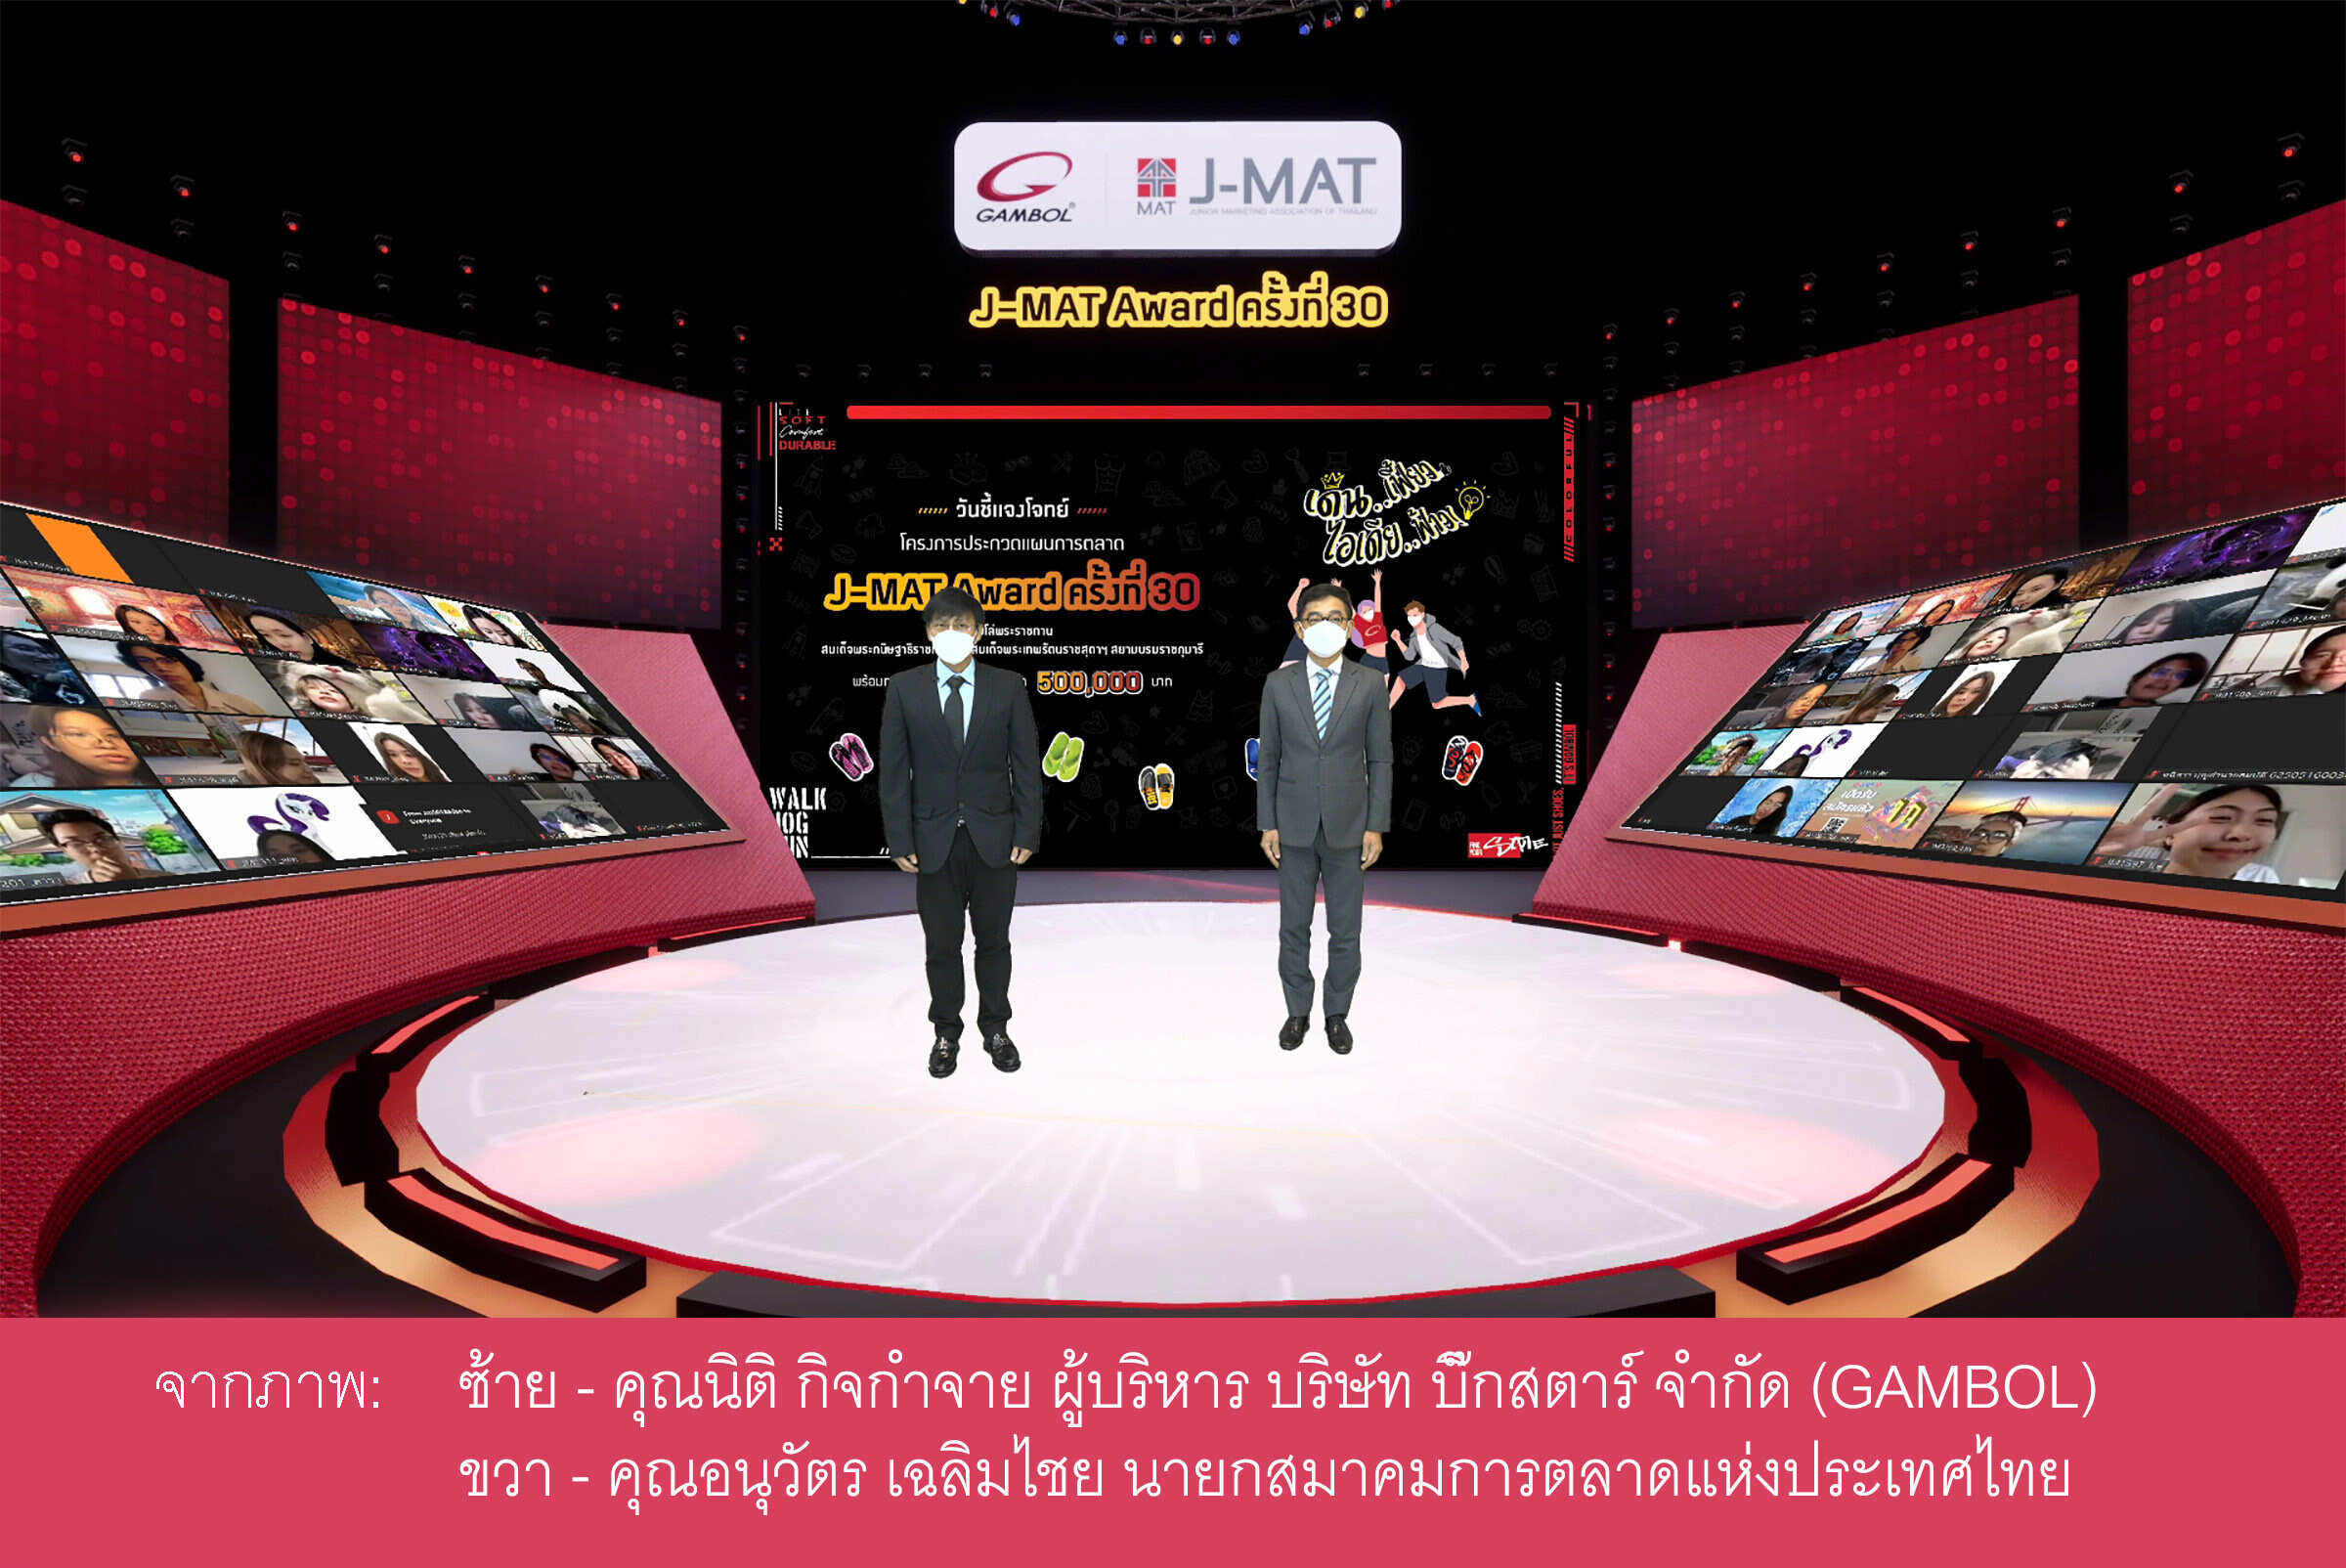 สมาคมการตลาดแห่งประเทศไทย ร่วมกับ บริษัท บิ๊กสตาร์ จำกัด ผู้ผลิตและจัดจำหน่ายรองเท้าแบรนด์แกมโบล (GAMBOL) จัดพิธีเปิดโครงการประกวดแผนการตลาด J-MAT Award ครั้งที่ 30 พร้อมชี้แจงโจทย์